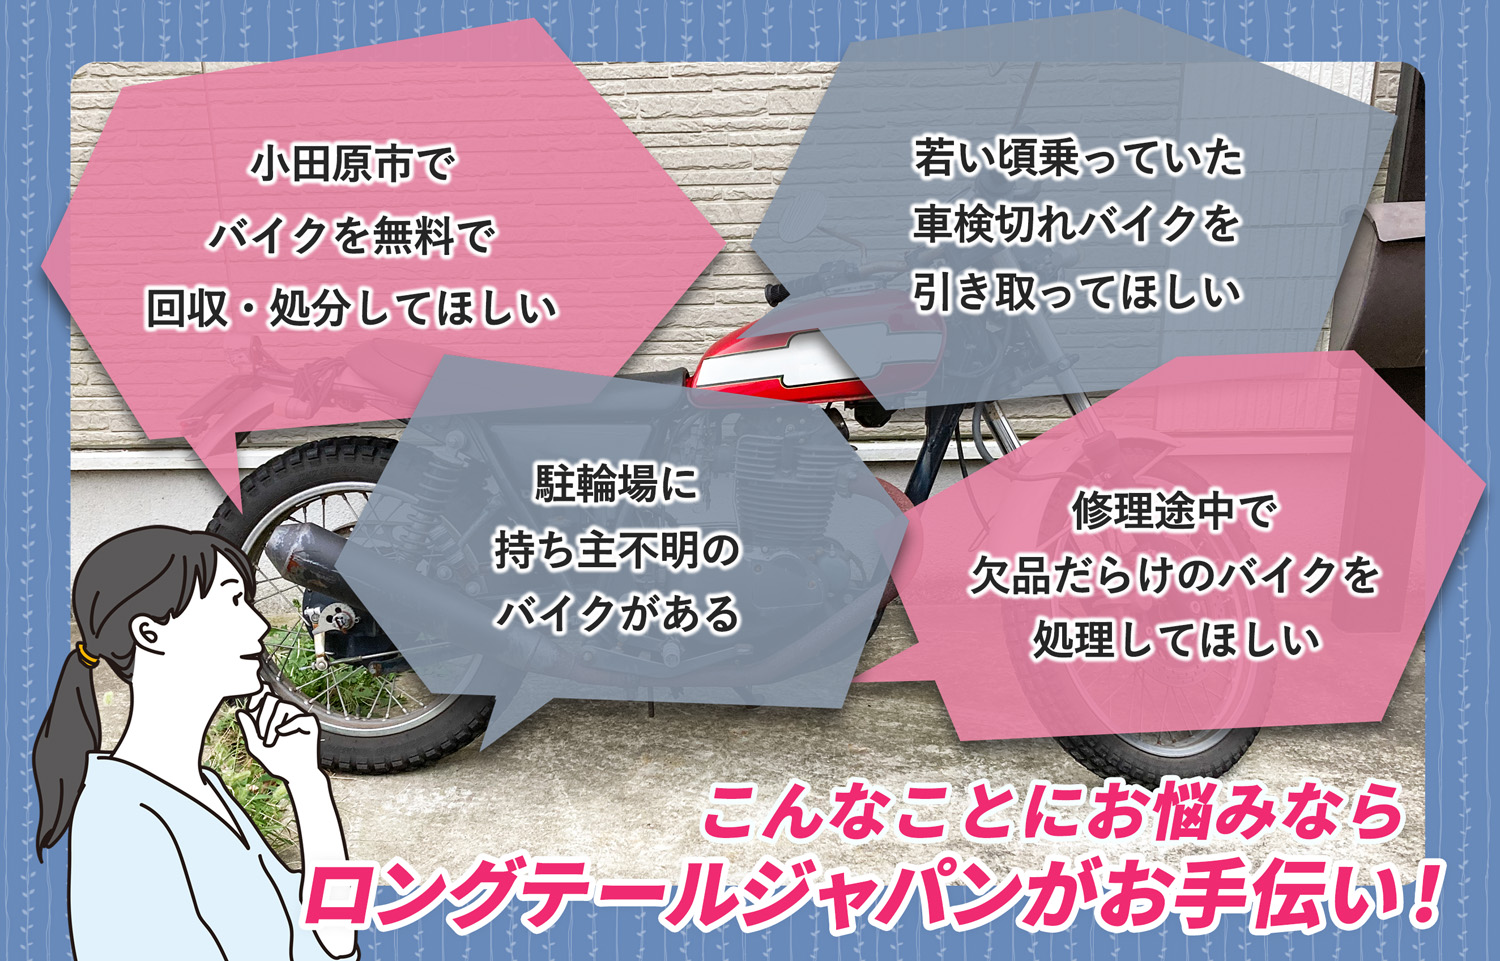 小田原市でこんなバイクの処分にお困りでしたらバイク無料回収処分隊がお手伝いいたします。